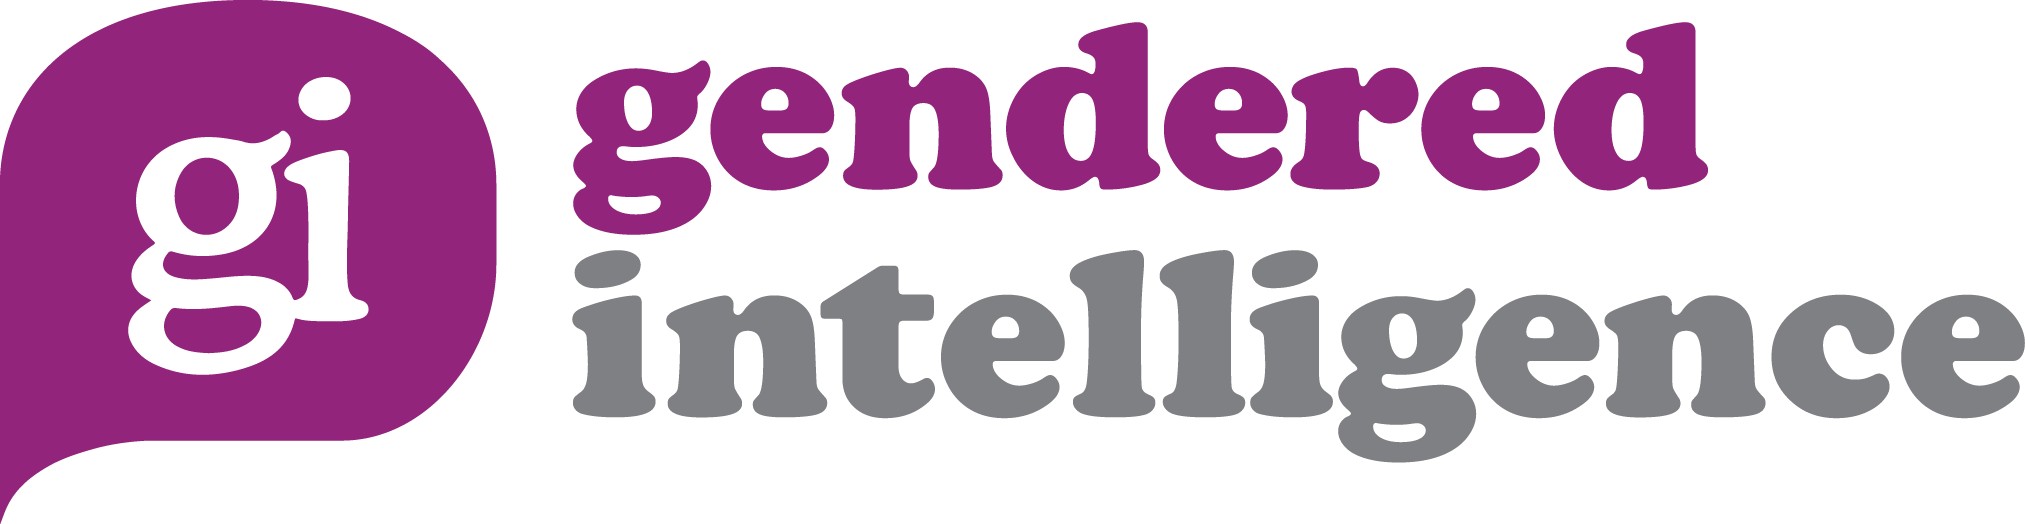 Gendered Intelligence | LinkedIn